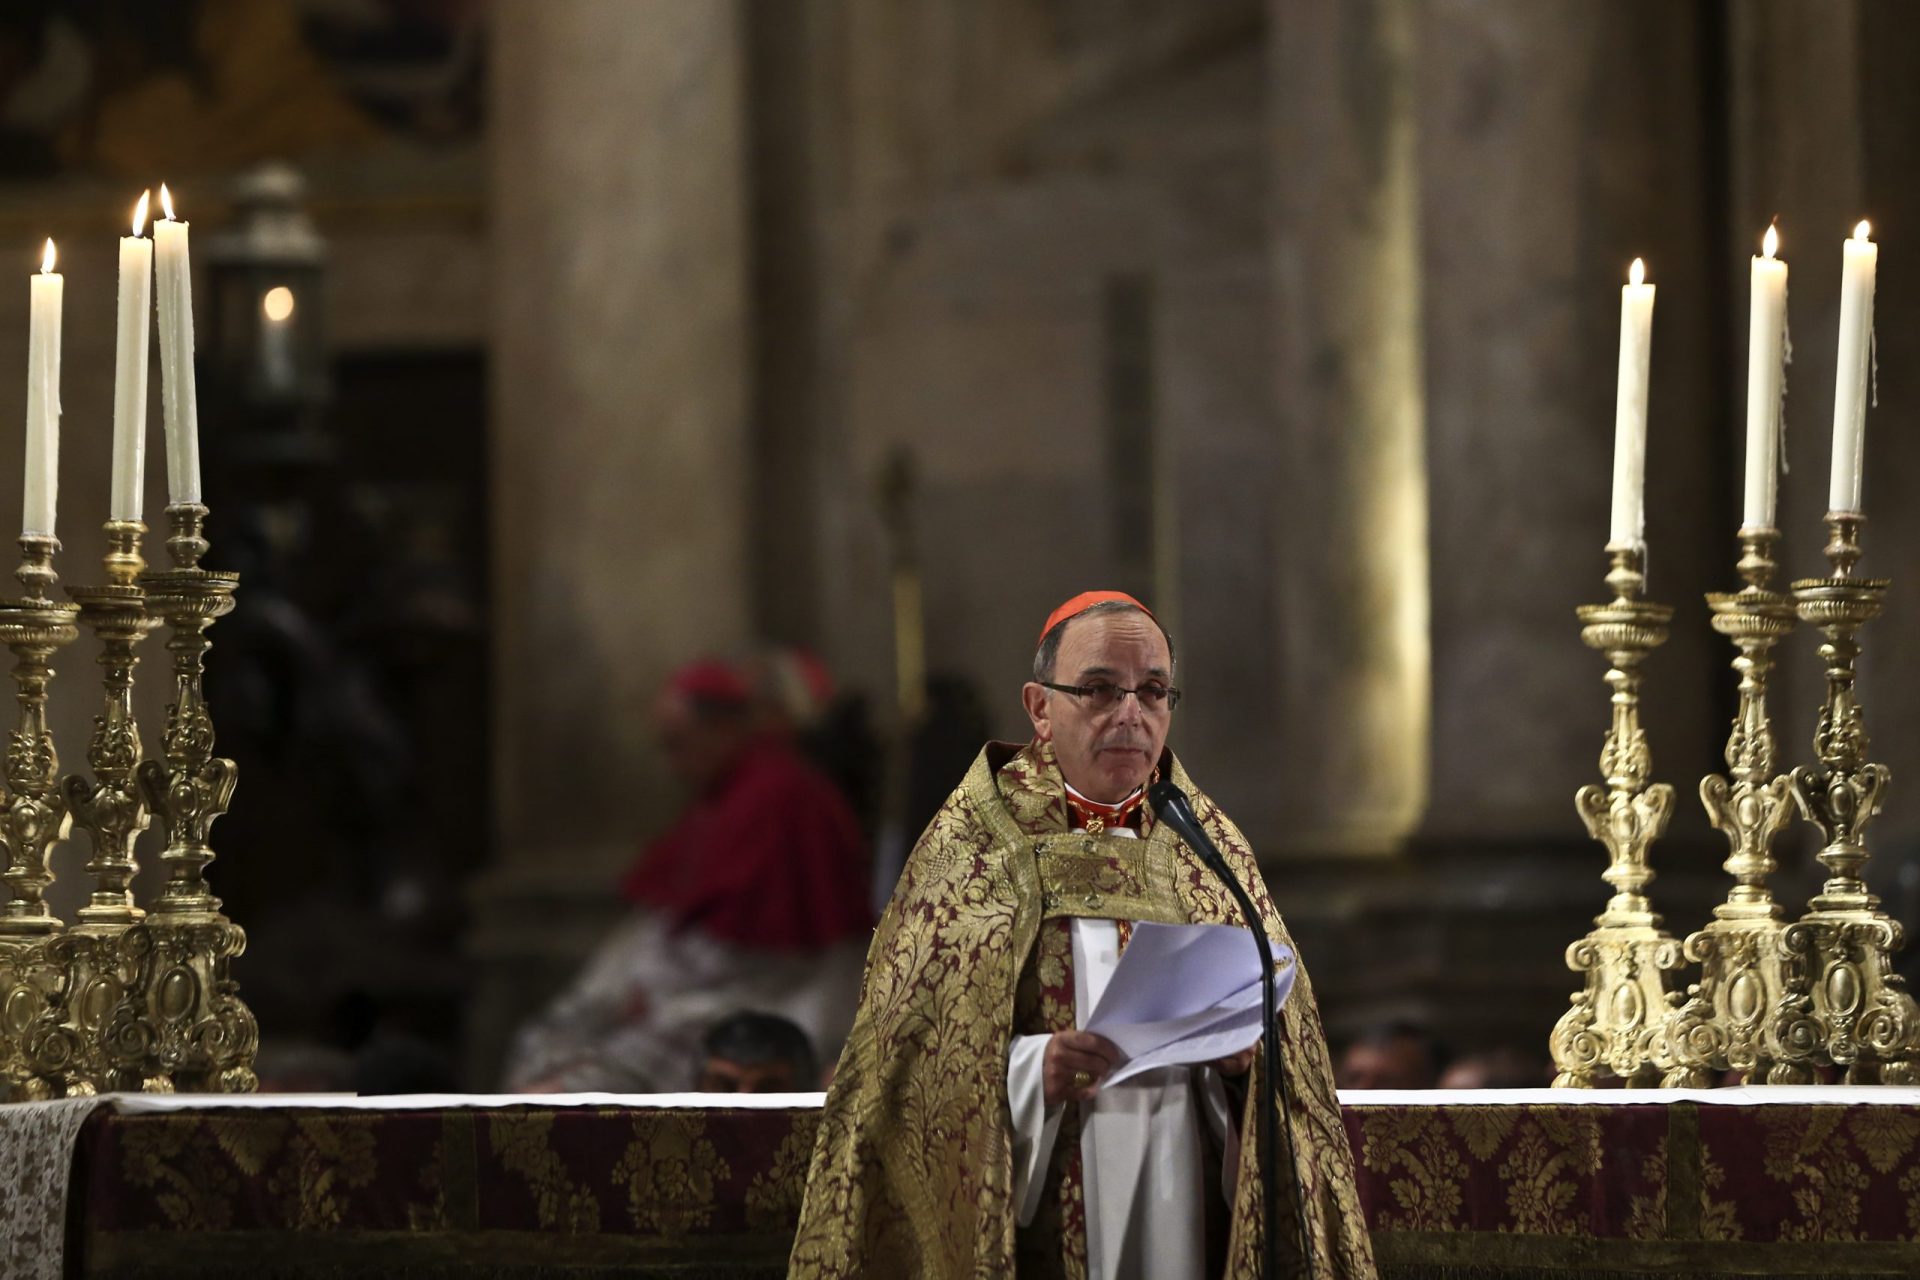 Cardeal-patriarca exorta católicos a serem ‘ilhas de misericórdia no mar da indiferença’